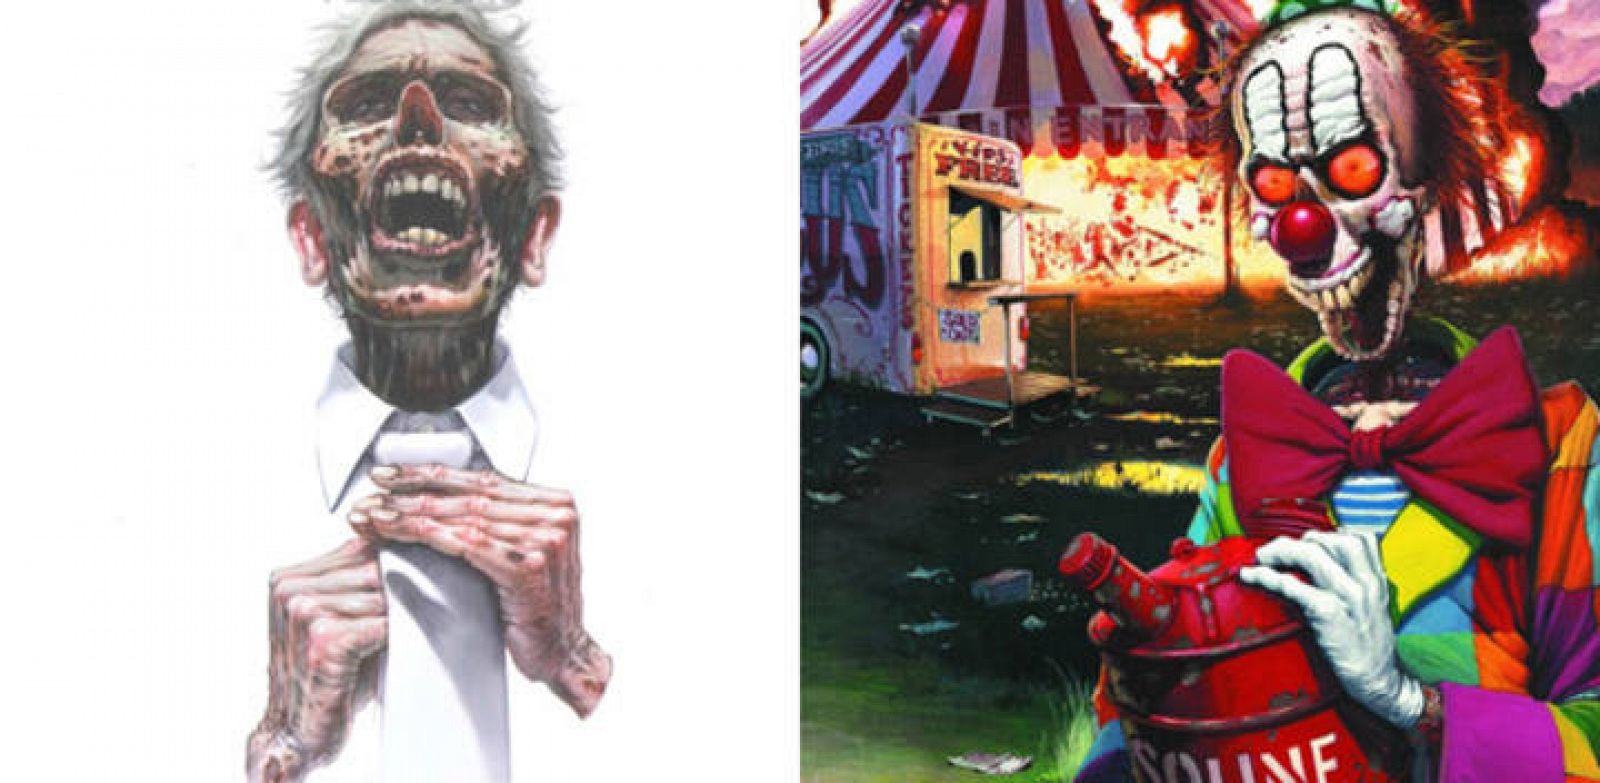 Fragmentos de la portada de 'Various horror visions' y de una de las cubiertas de la revista 'Cthulu' 